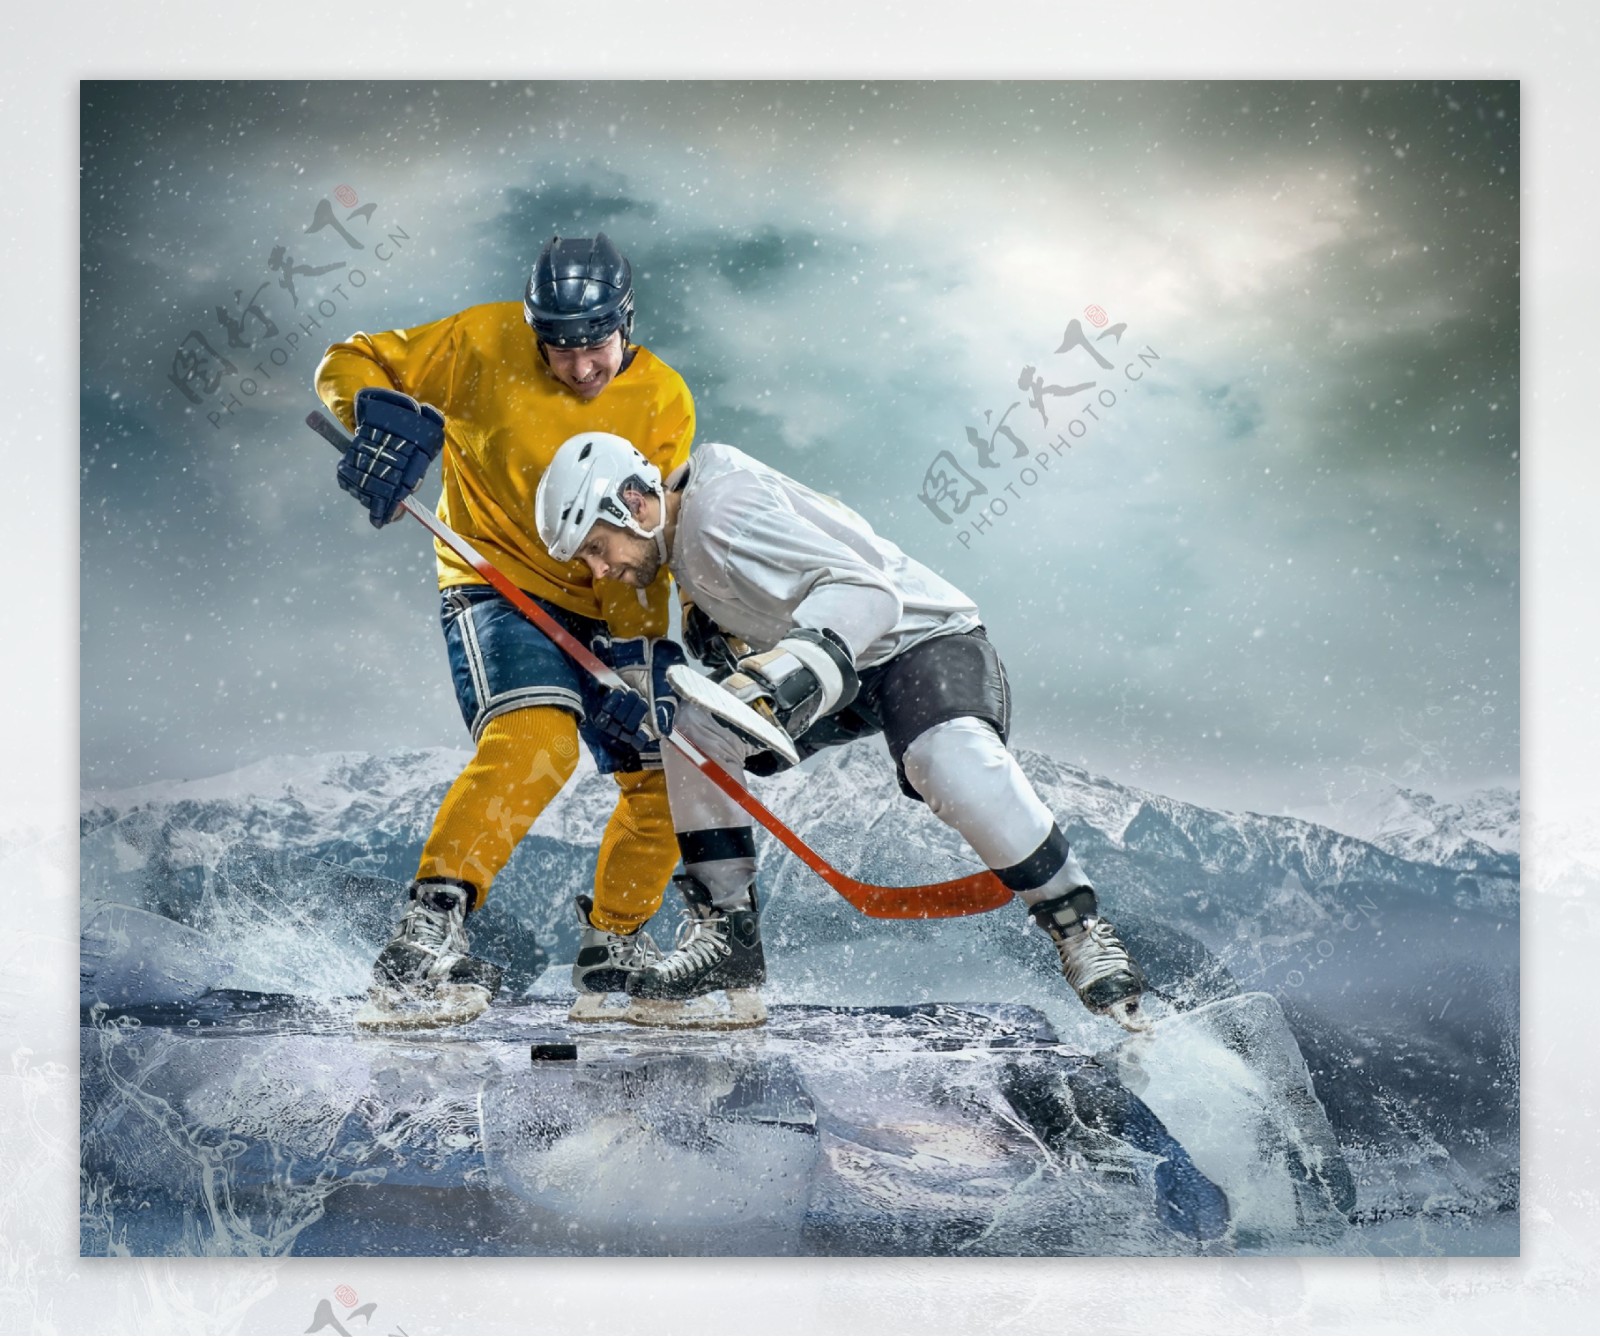 冰面上的曲棍球运动员图片